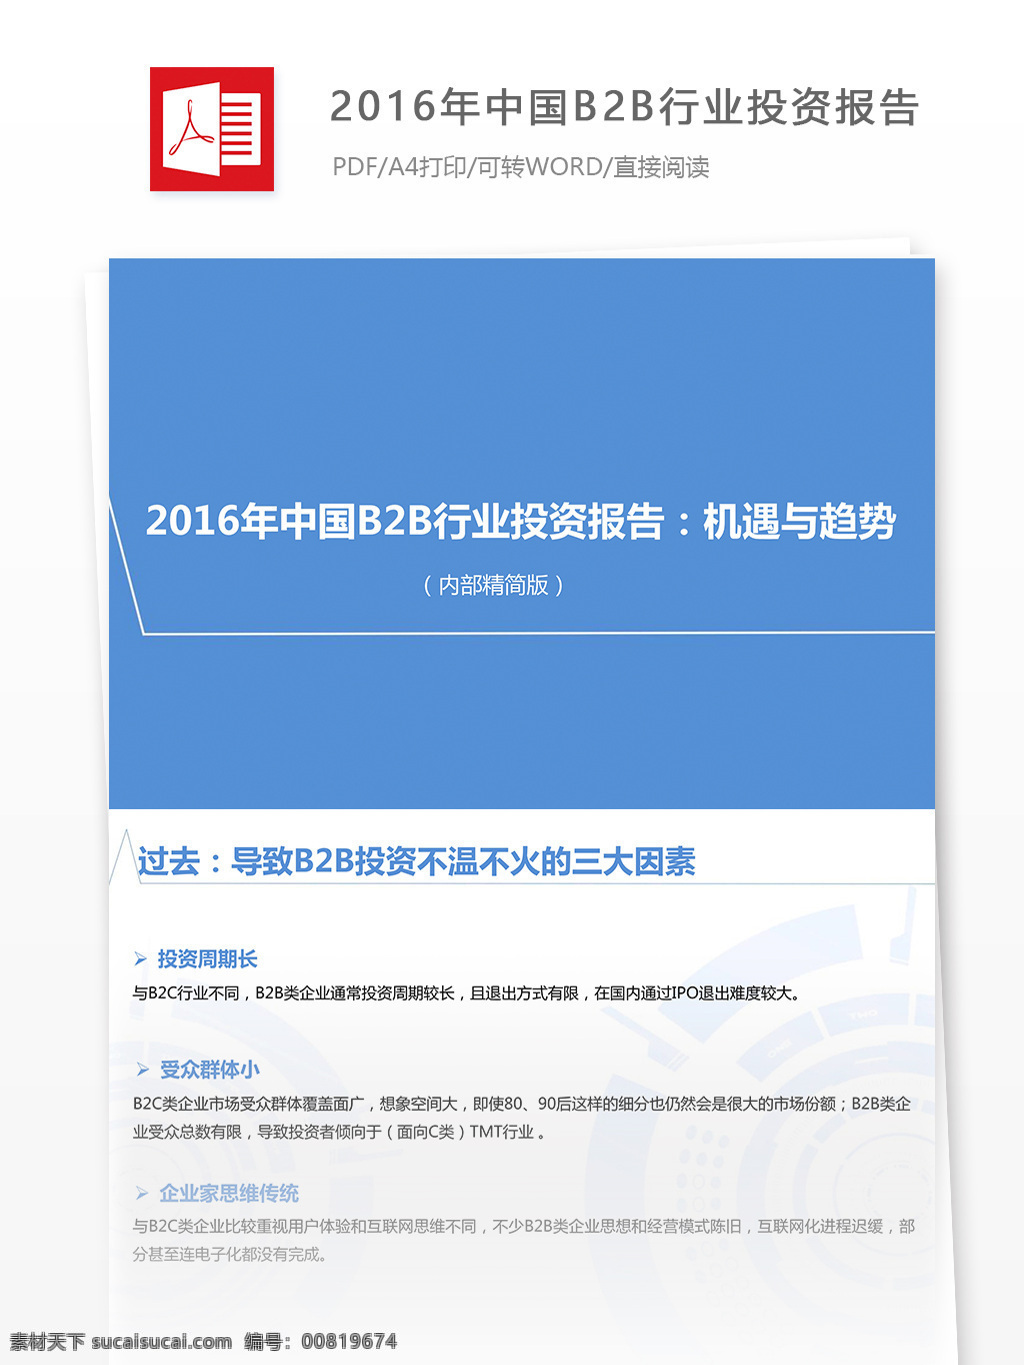 2016 年 中国 b2b 行业 投资报告 模版 投资 行业分析报告 投资行业 分析报告 报告模板